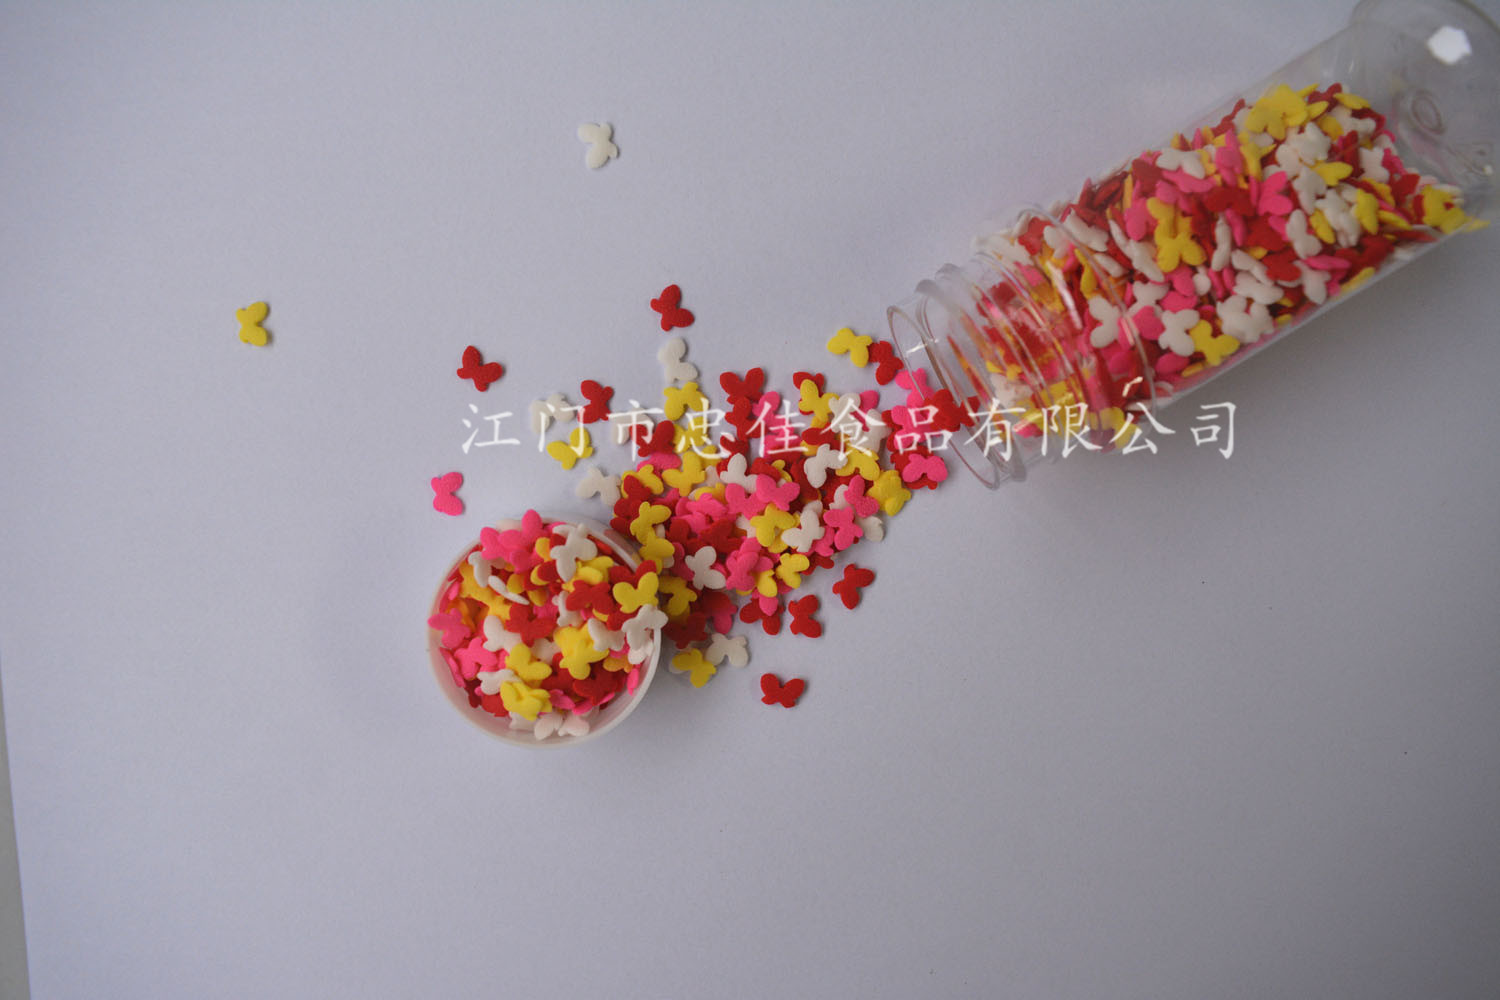 蝴蝶切片糖 sprinkles in bulk for dessert decoration butterfly shape